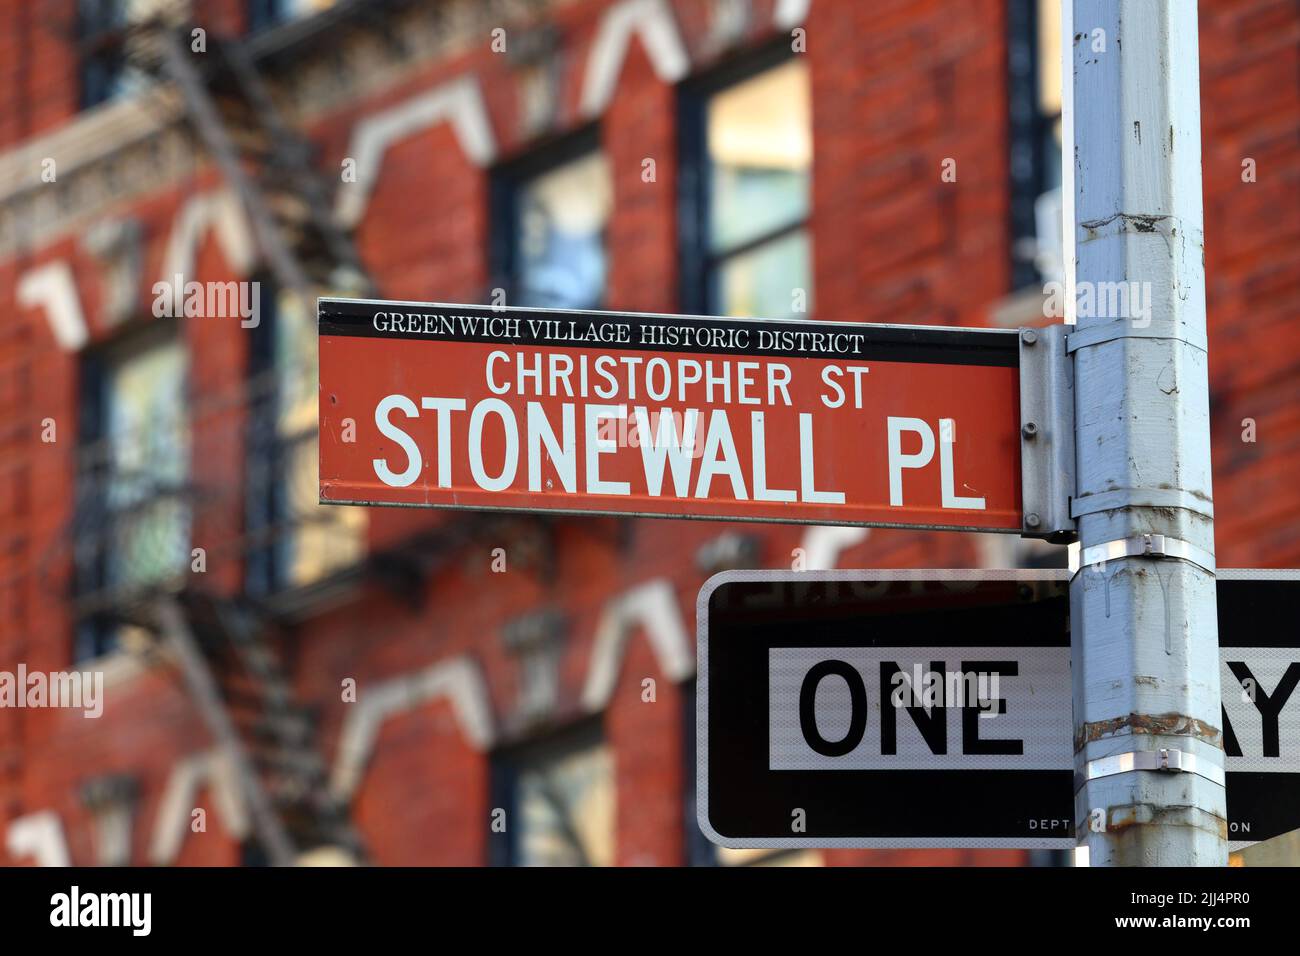 Christopher Street, Stonewall Coloque la señal de la calle en el distrito histórico de Greenwich Village en Manhattan, Nueva York. Christopher St, Stonewall Pl. Foto de stock